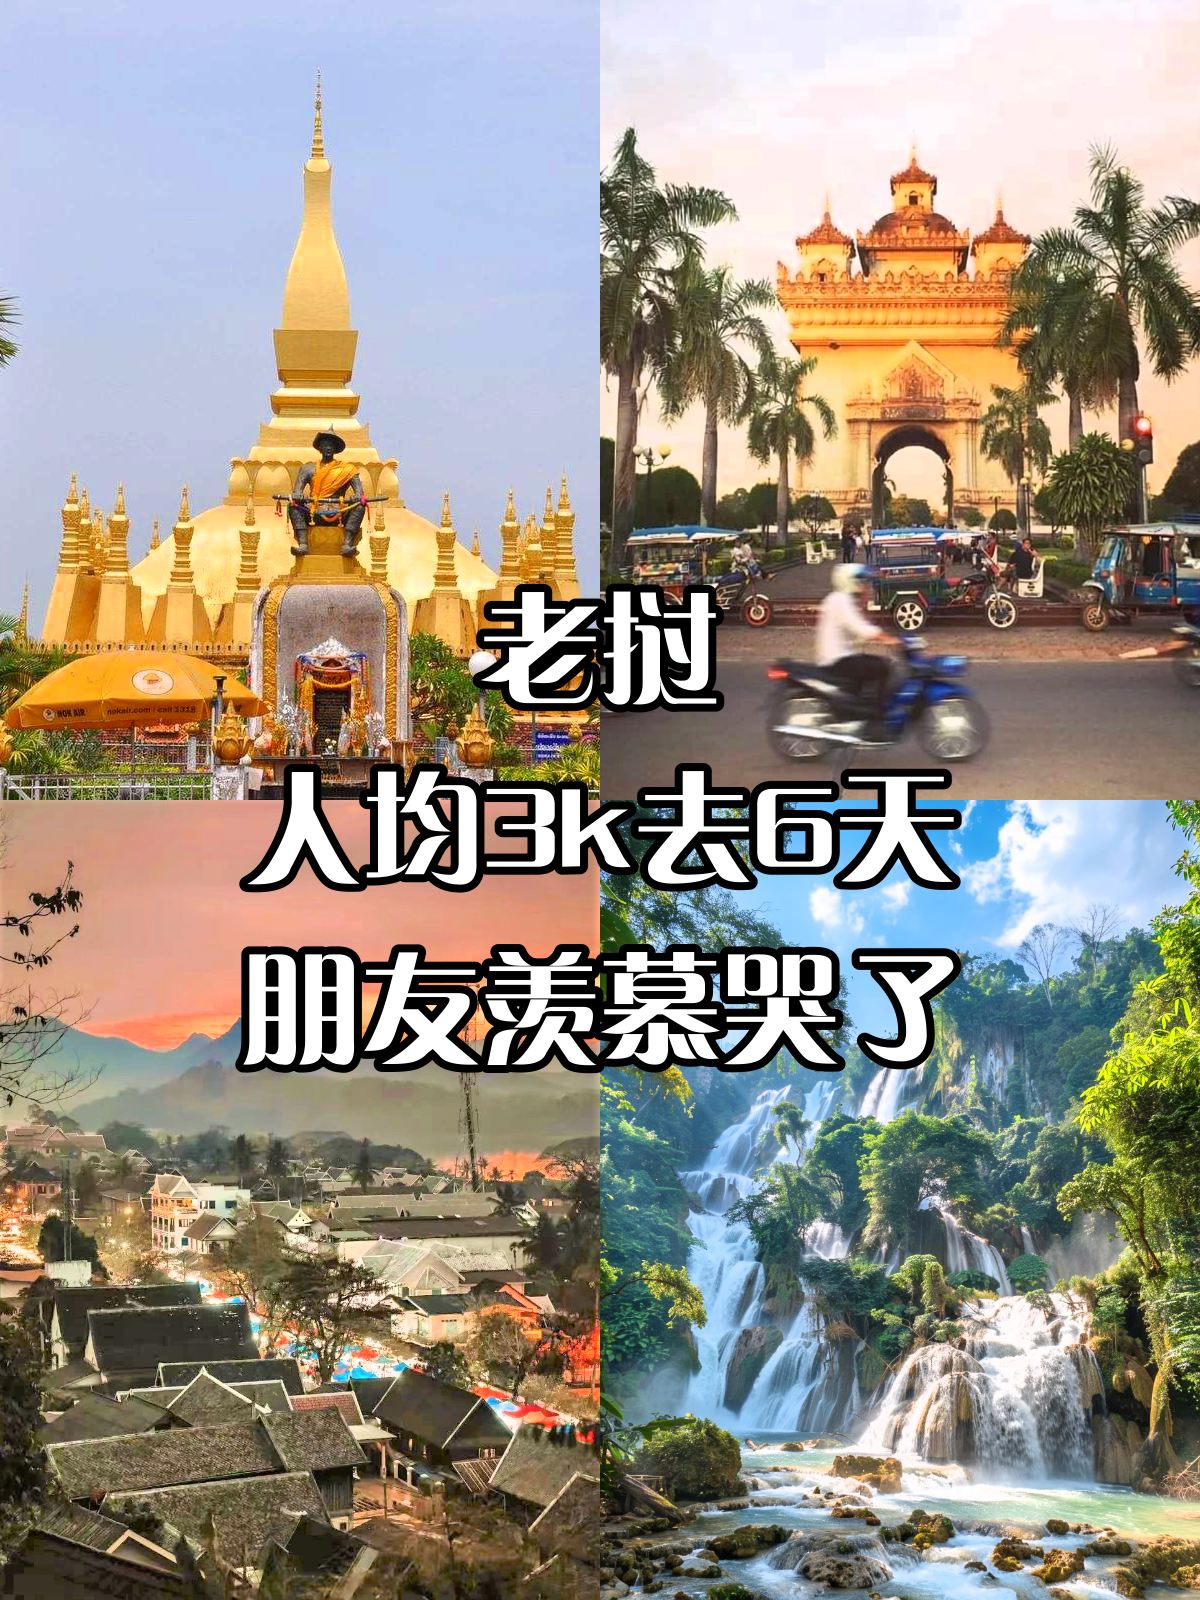 老挝🏝小长假带全家出国人均3k就够了